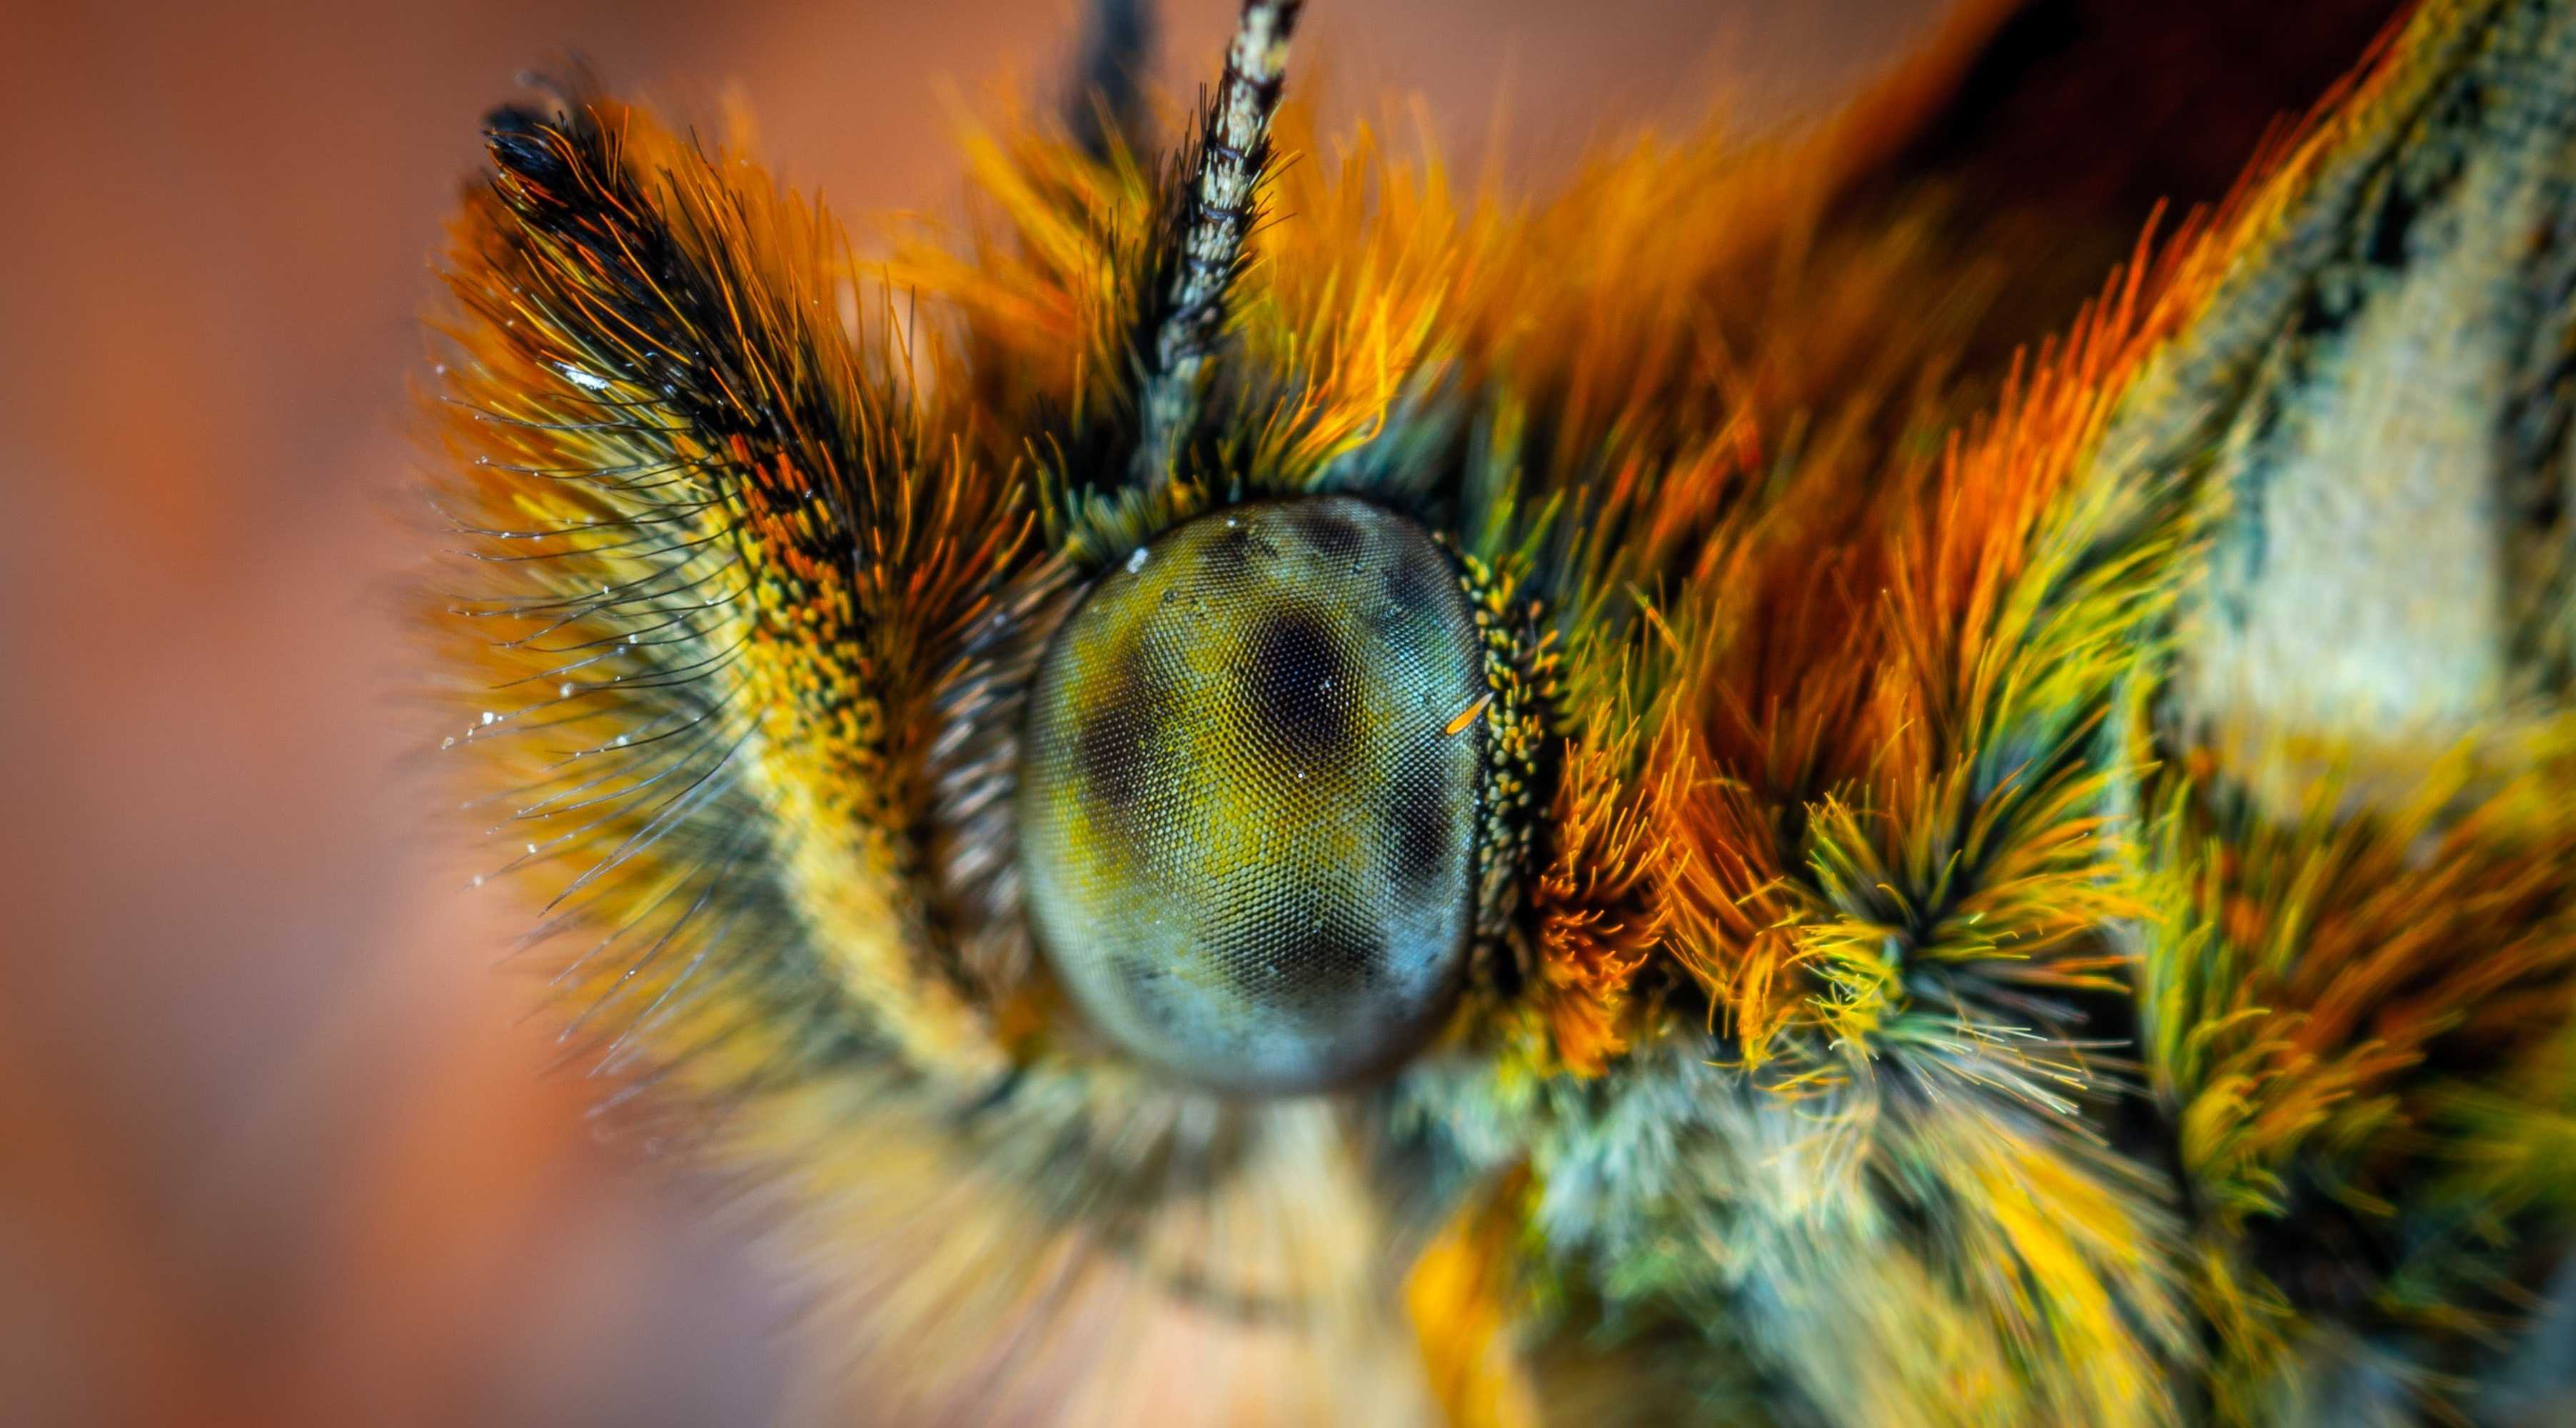 Зрение бабочек помогло «увидеть» раковые клетки